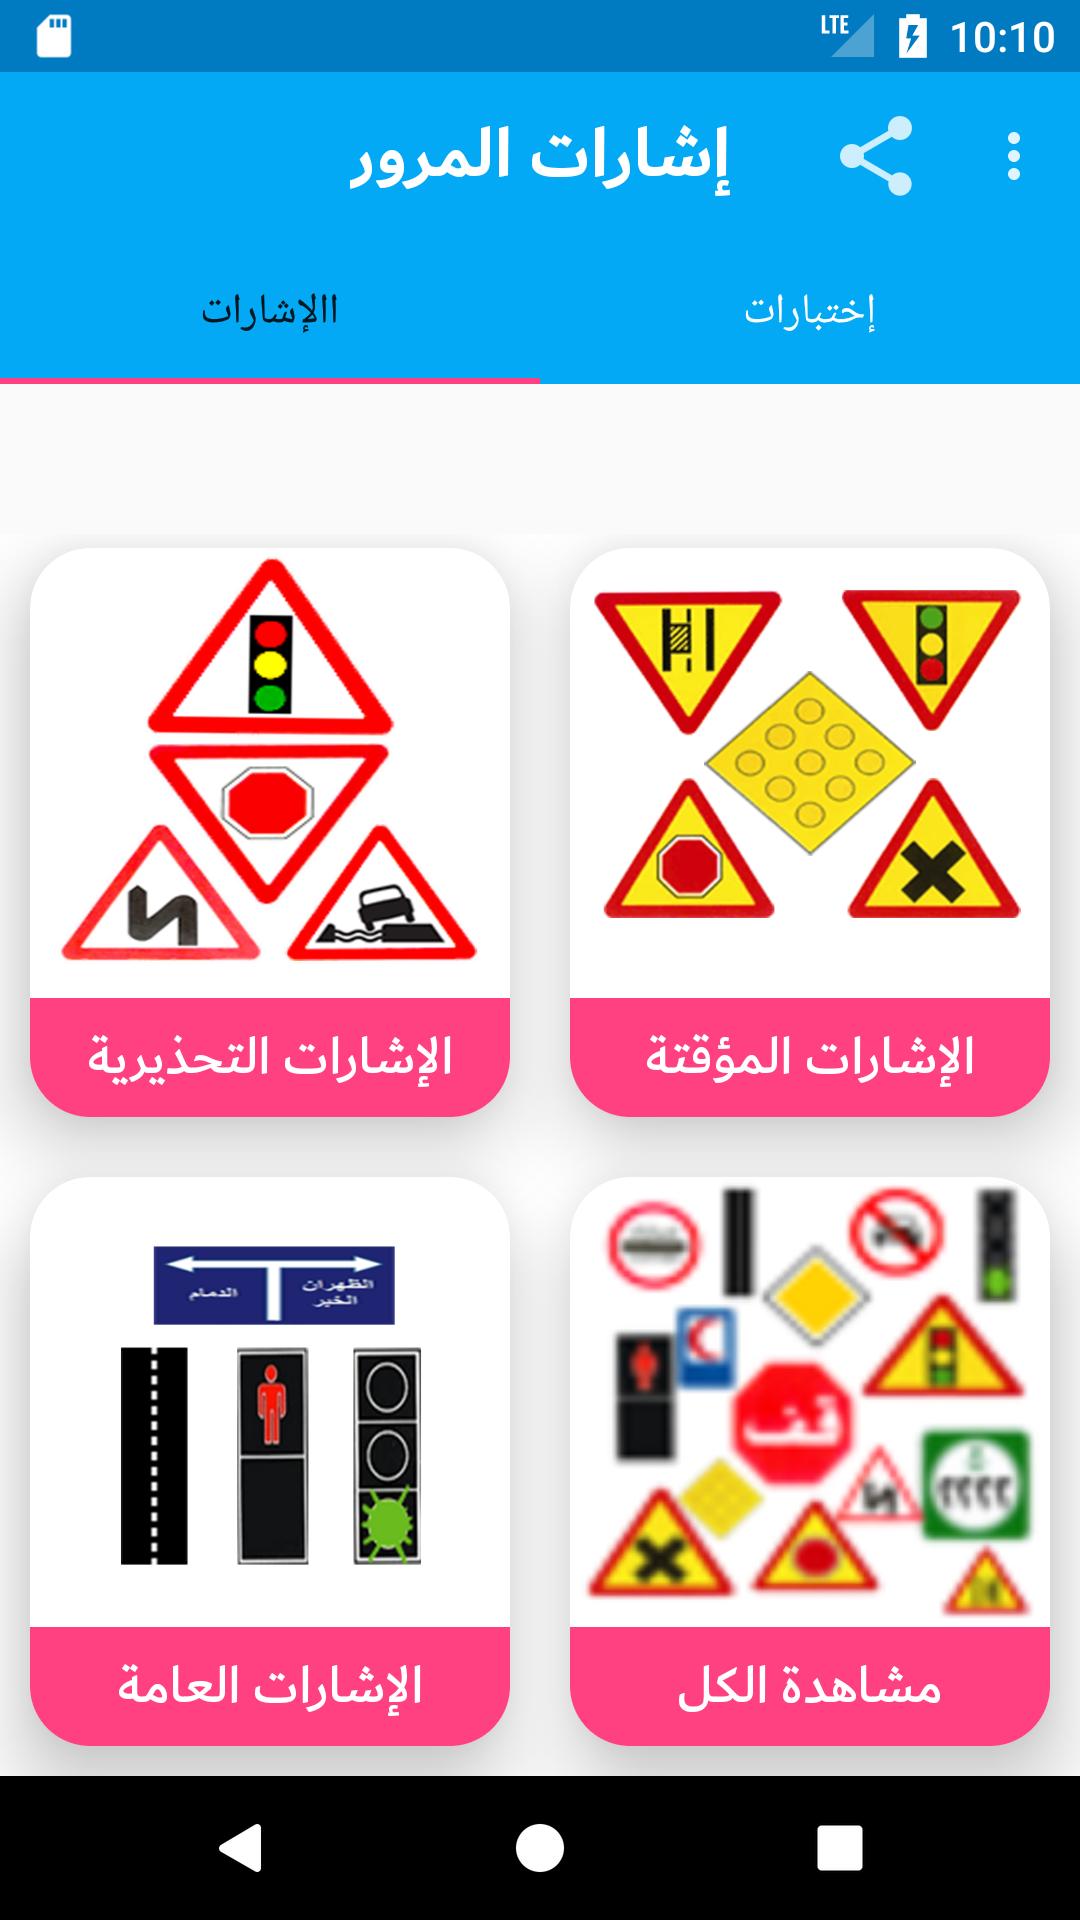 ดาวน์โหลด إختبار اشارات المرور السعودية 2018 APK สำหรับ Android